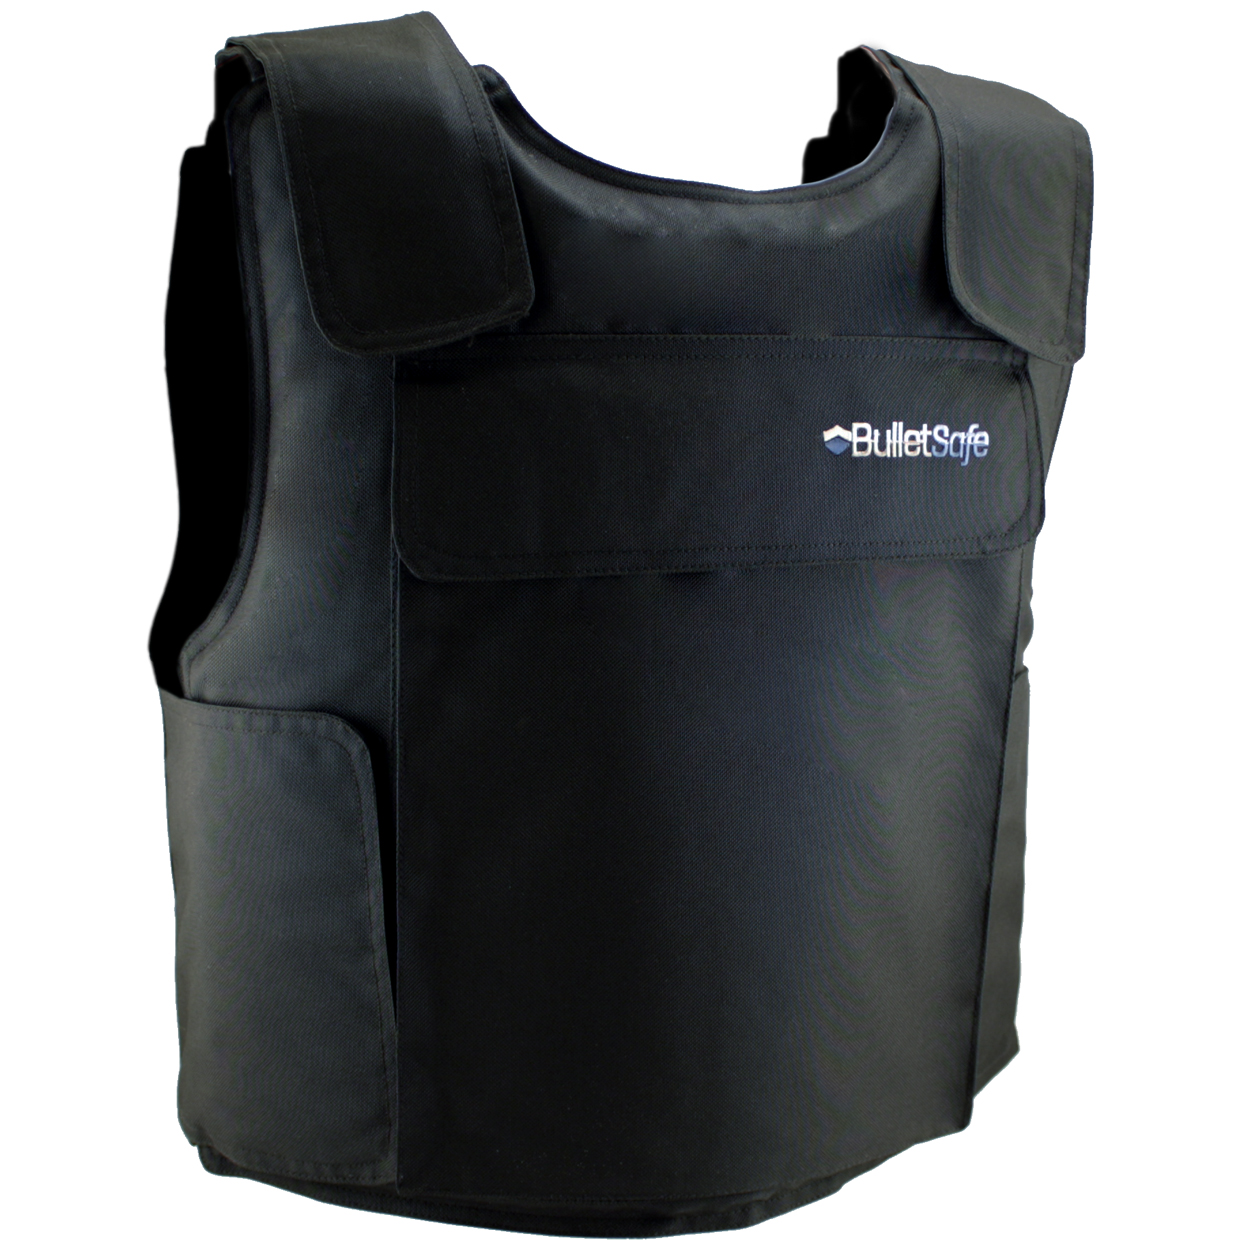 File:Bulletproof Vest.jpg